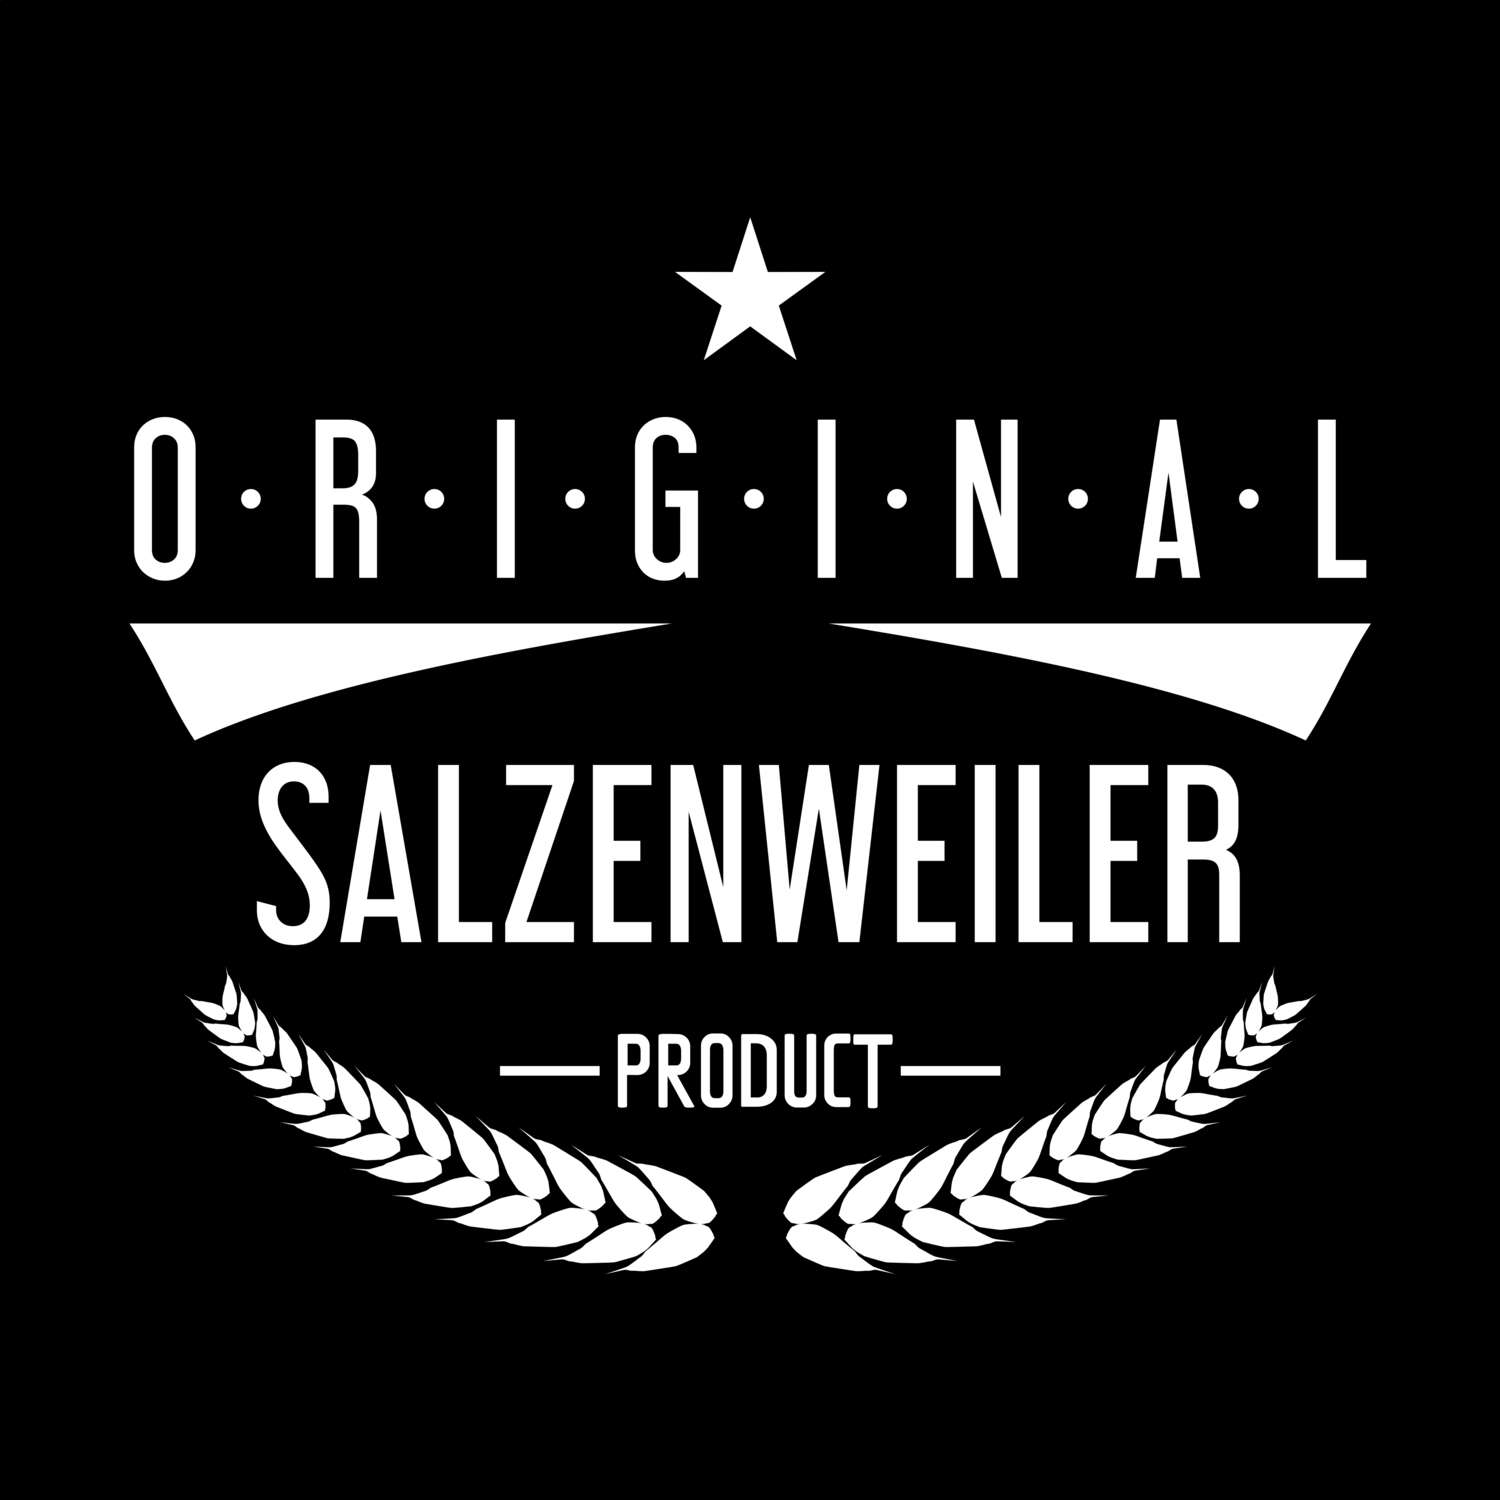 Salzenweiler T-Shirt »Original Product«